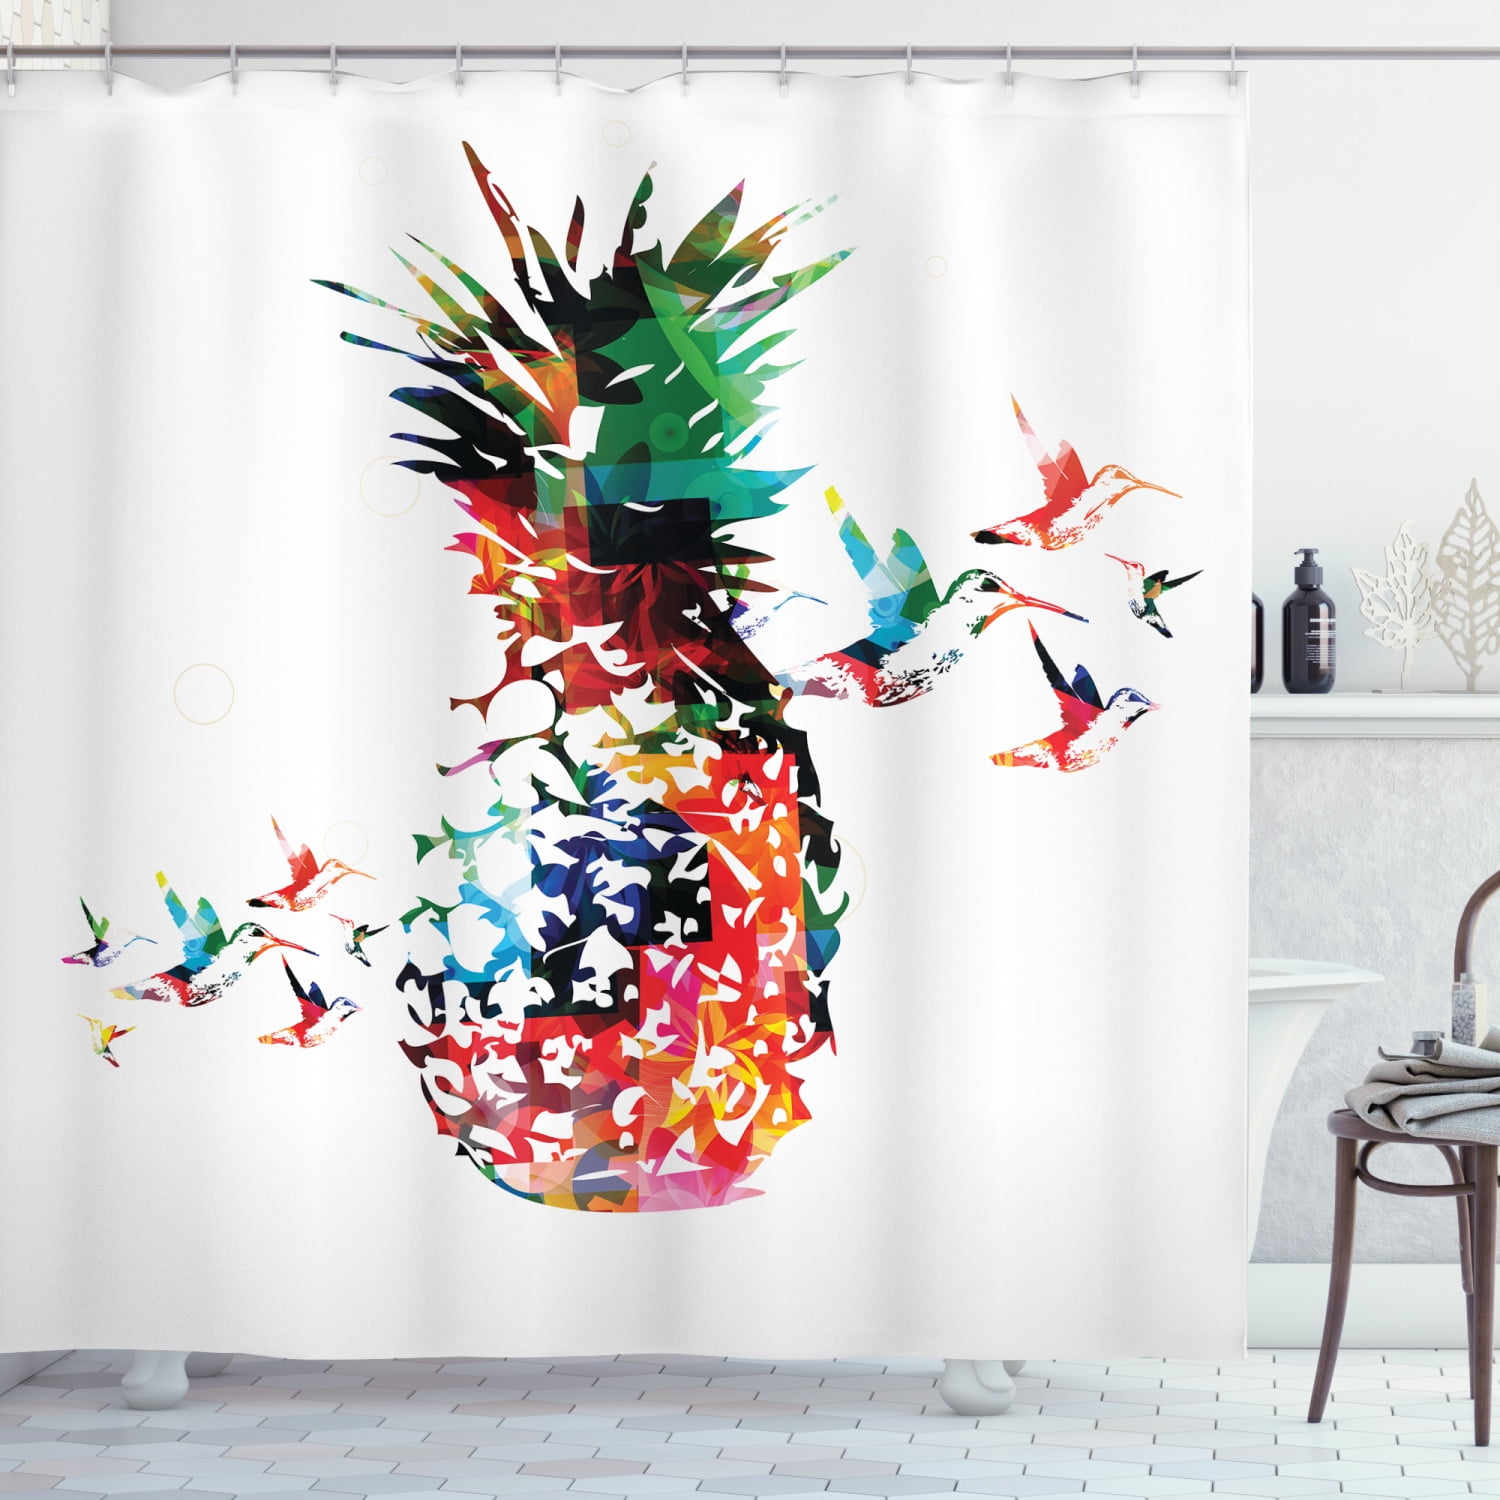 Shower Curtain Liner Waterproof Fabric Tropical Pineapple Flowers Bathroom Hooks 